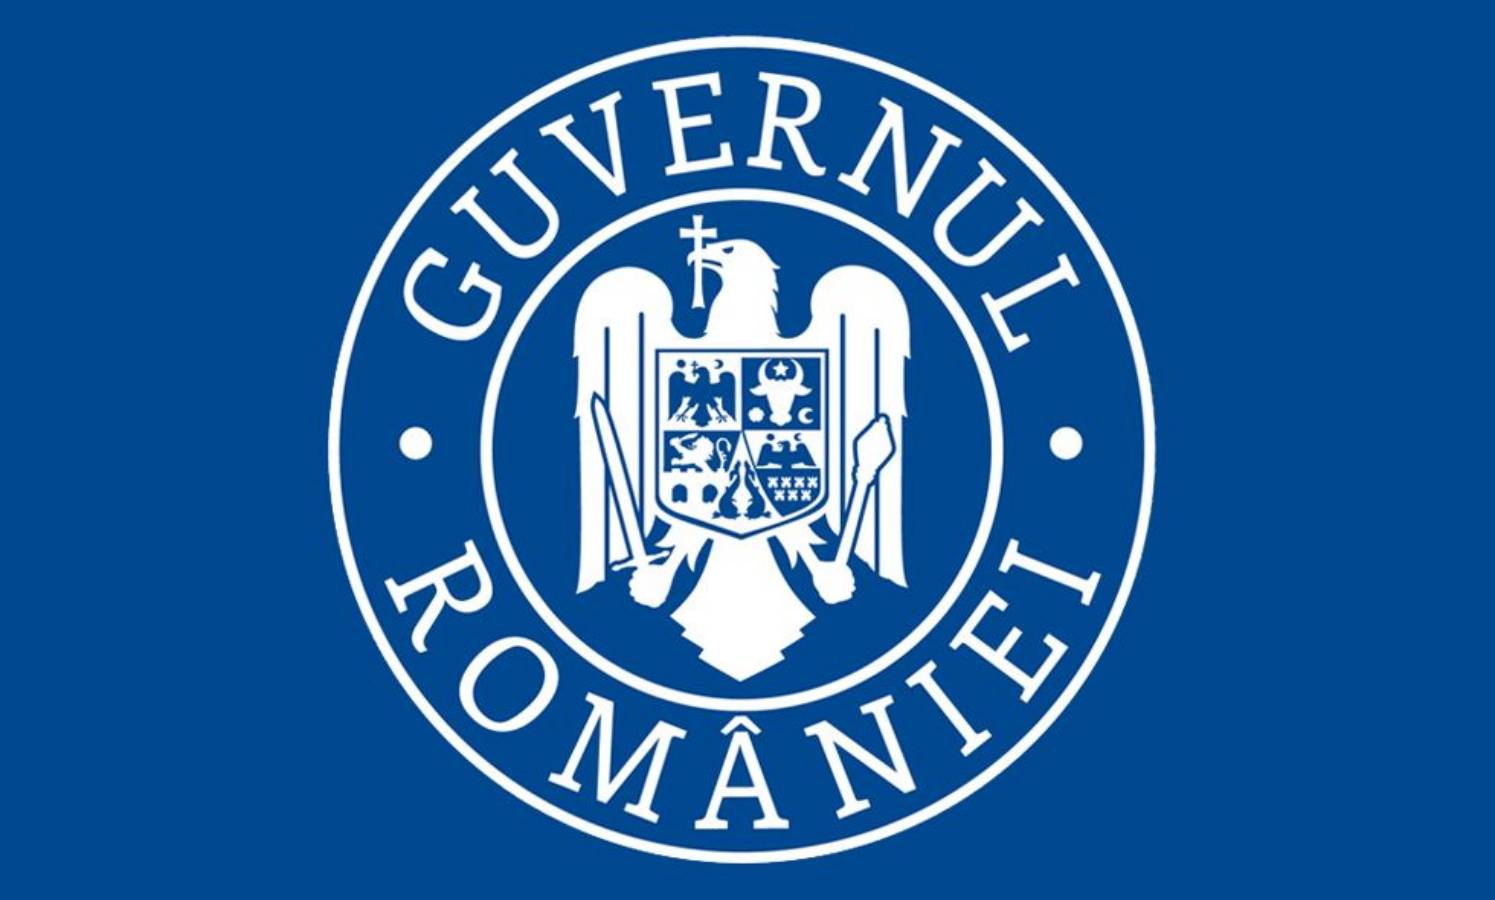 De regering van Roemenië besluit de scenario's van de school te bepalen